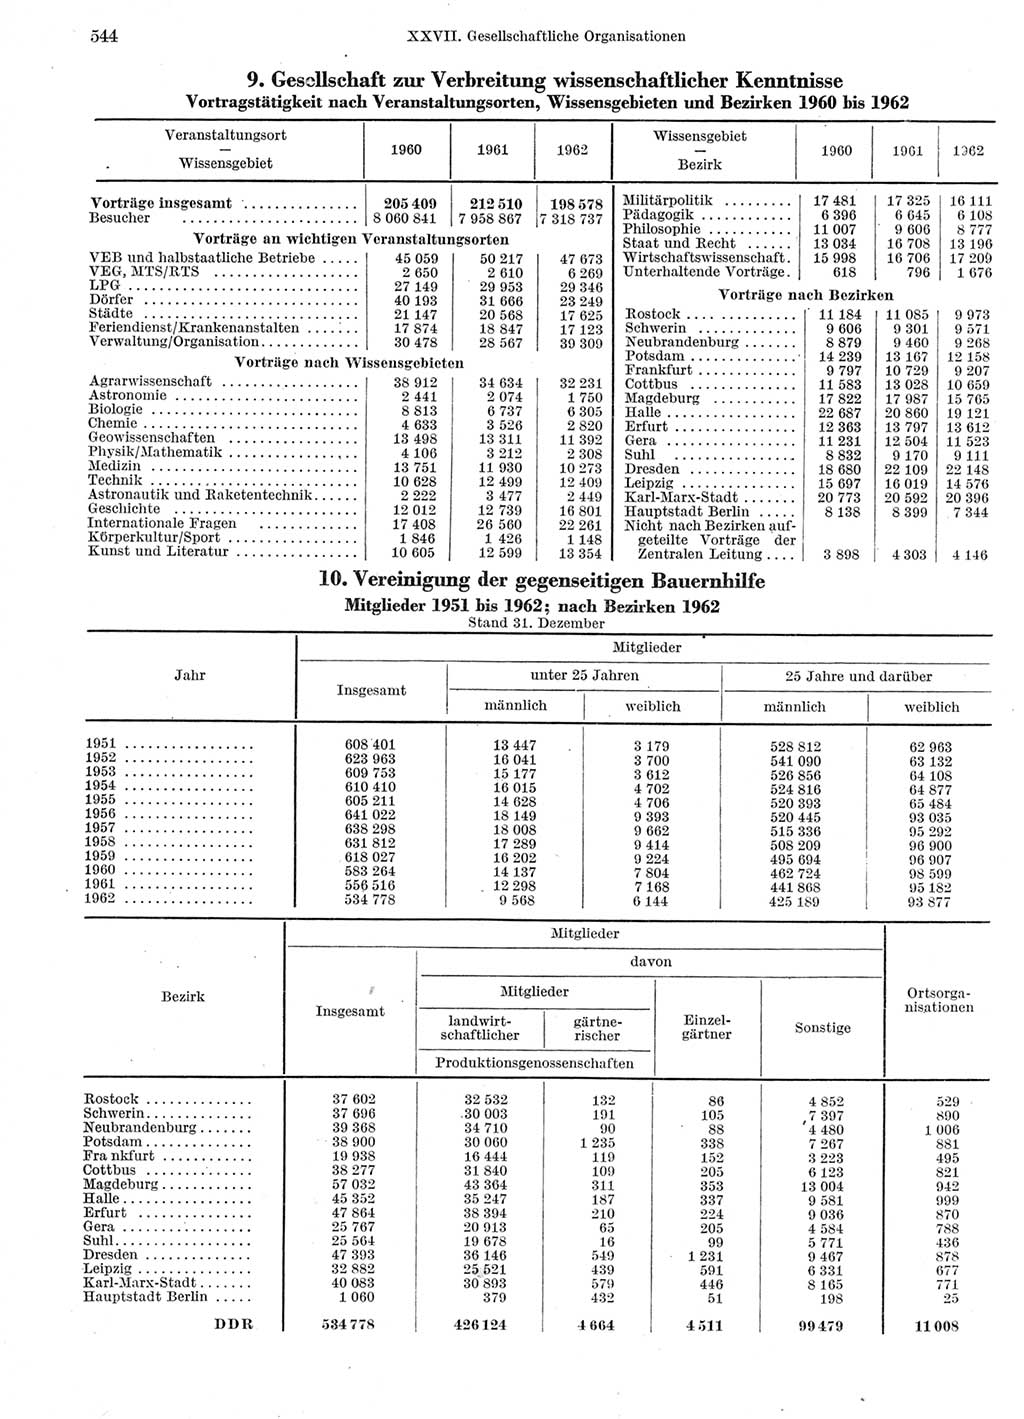 Statistisches Jahrbuch der Deutschen Demokratischen Republik (DDR) 1963, Seite 544 (Stat. Jb. DDR 1963, S. 544)